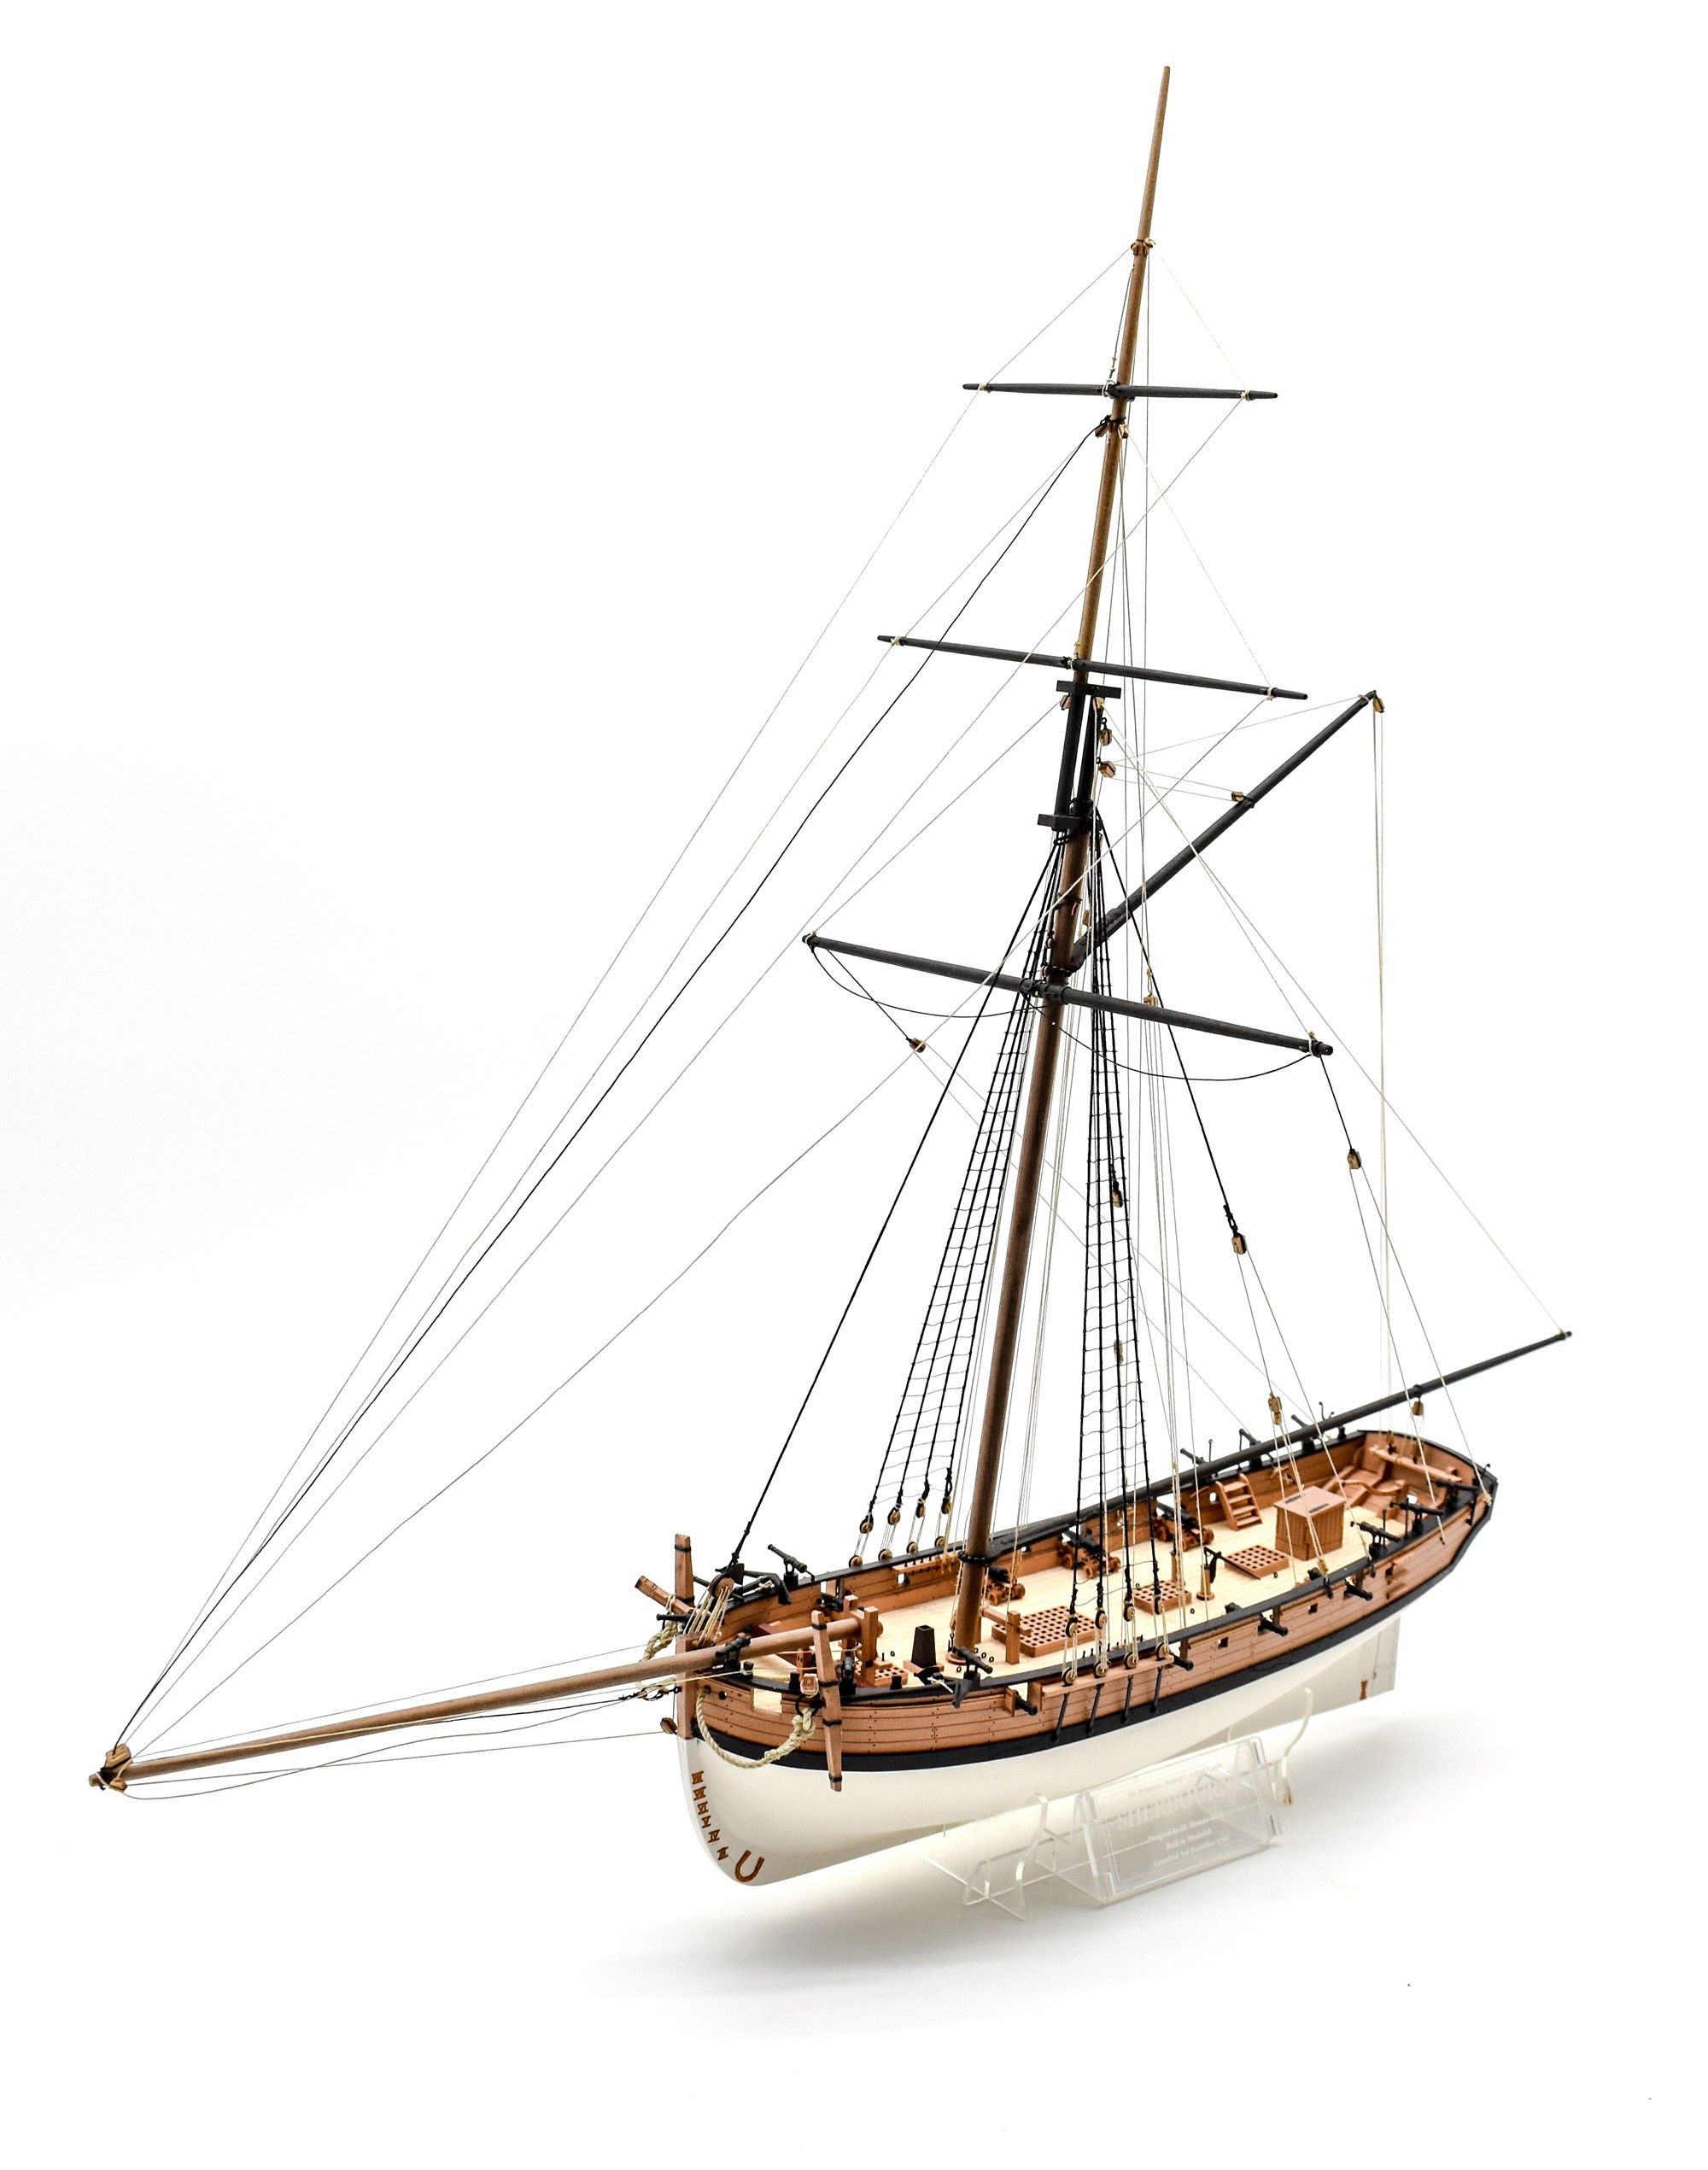 HM Armed Cutter Sherbourne, 1763 (Vanguard Models, 1:64)